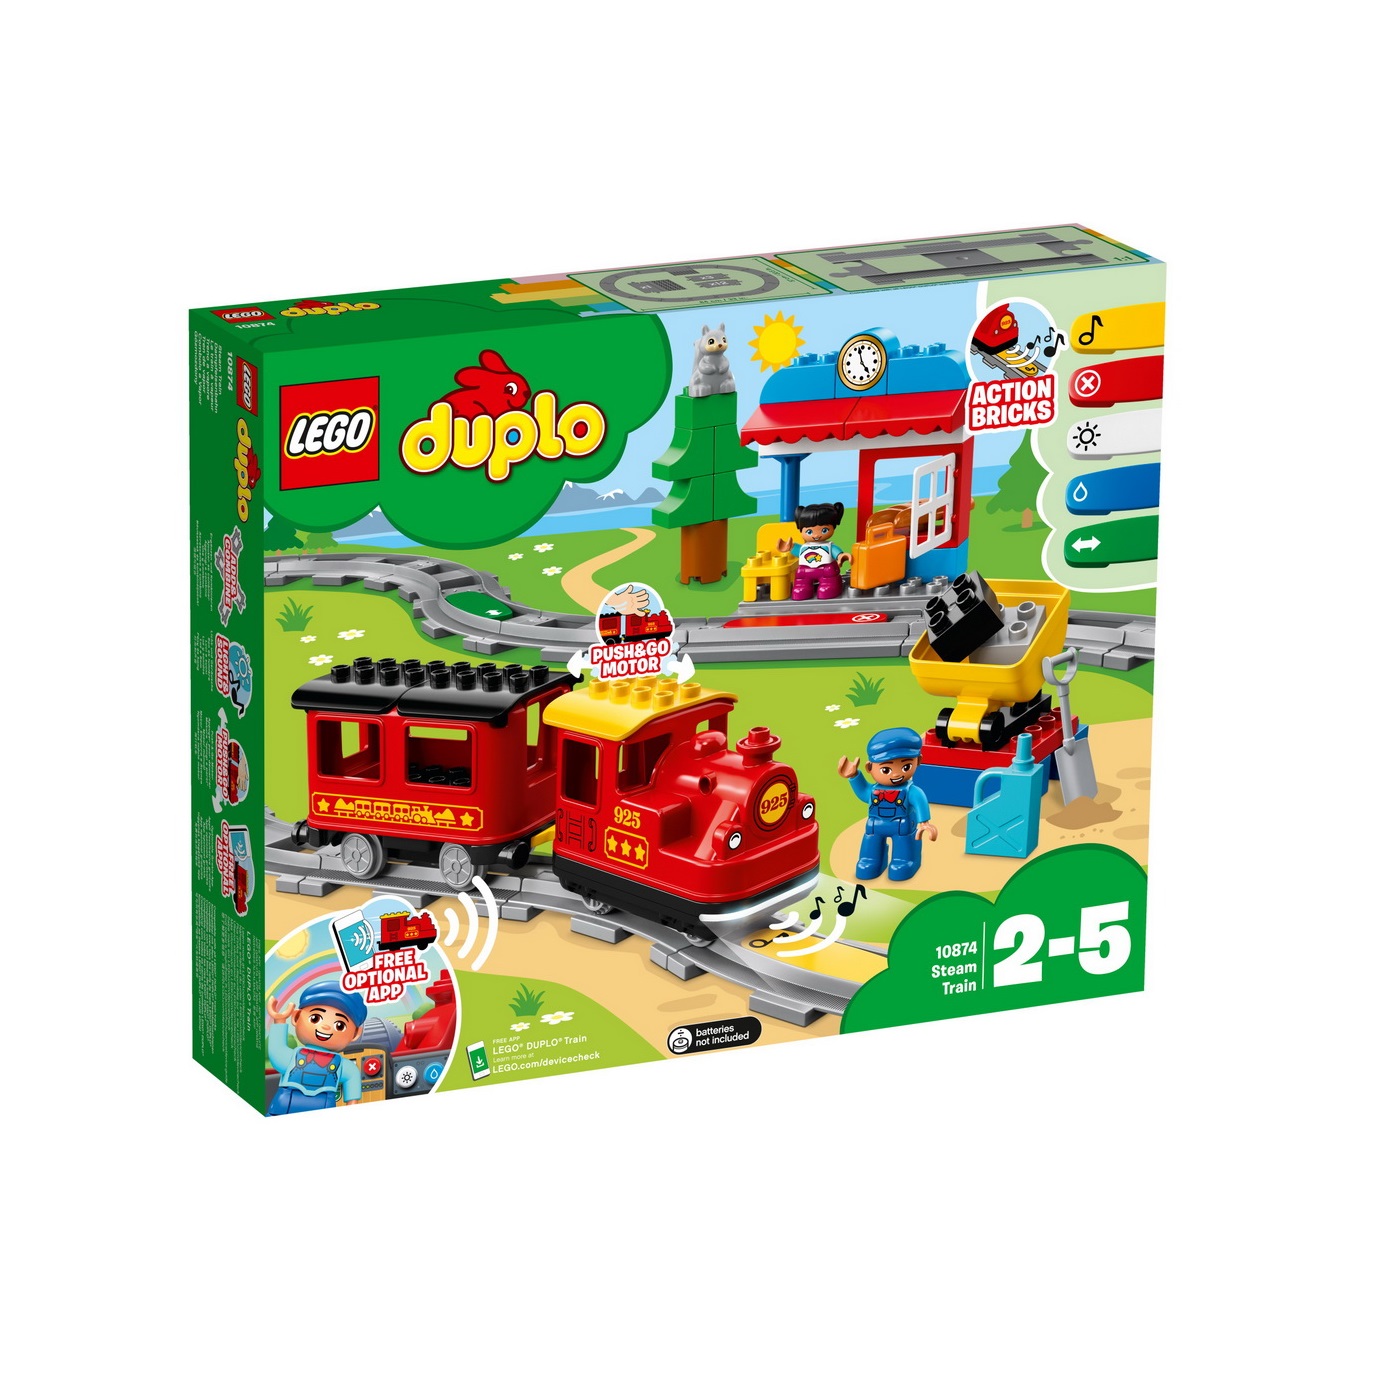 Tren cu aburi Lego Duplo, +2 ani, 10874, Lego